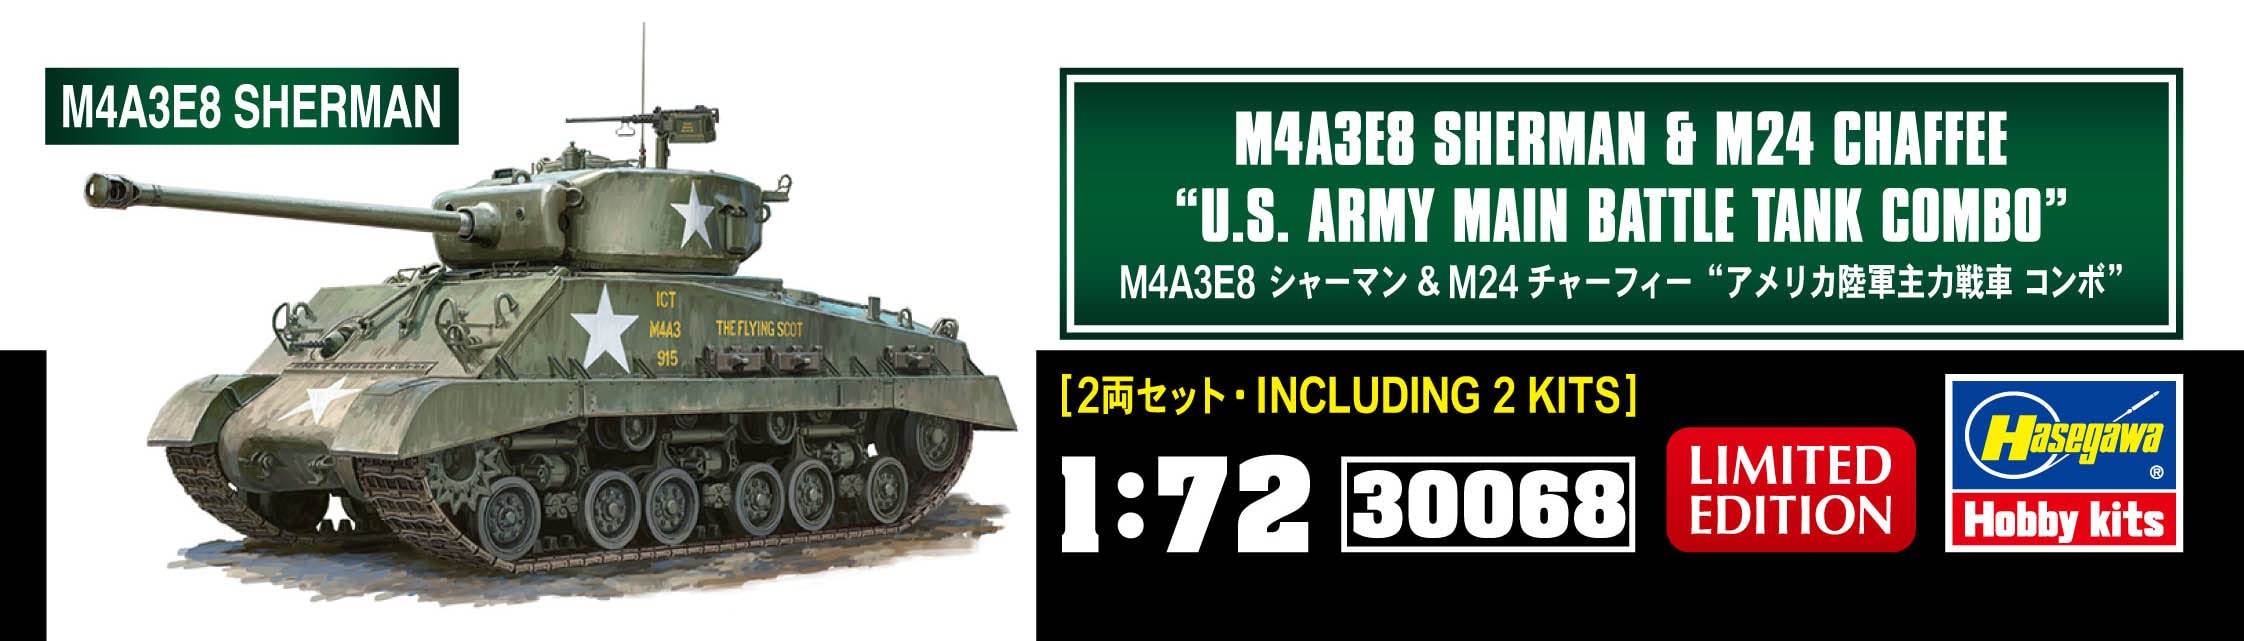 1/72 M4A3E8 SHERMAN & M24 CHAFFEE U.S. ARMY MAIN BATTLE TANK COMBO kit 30068 NEW_6